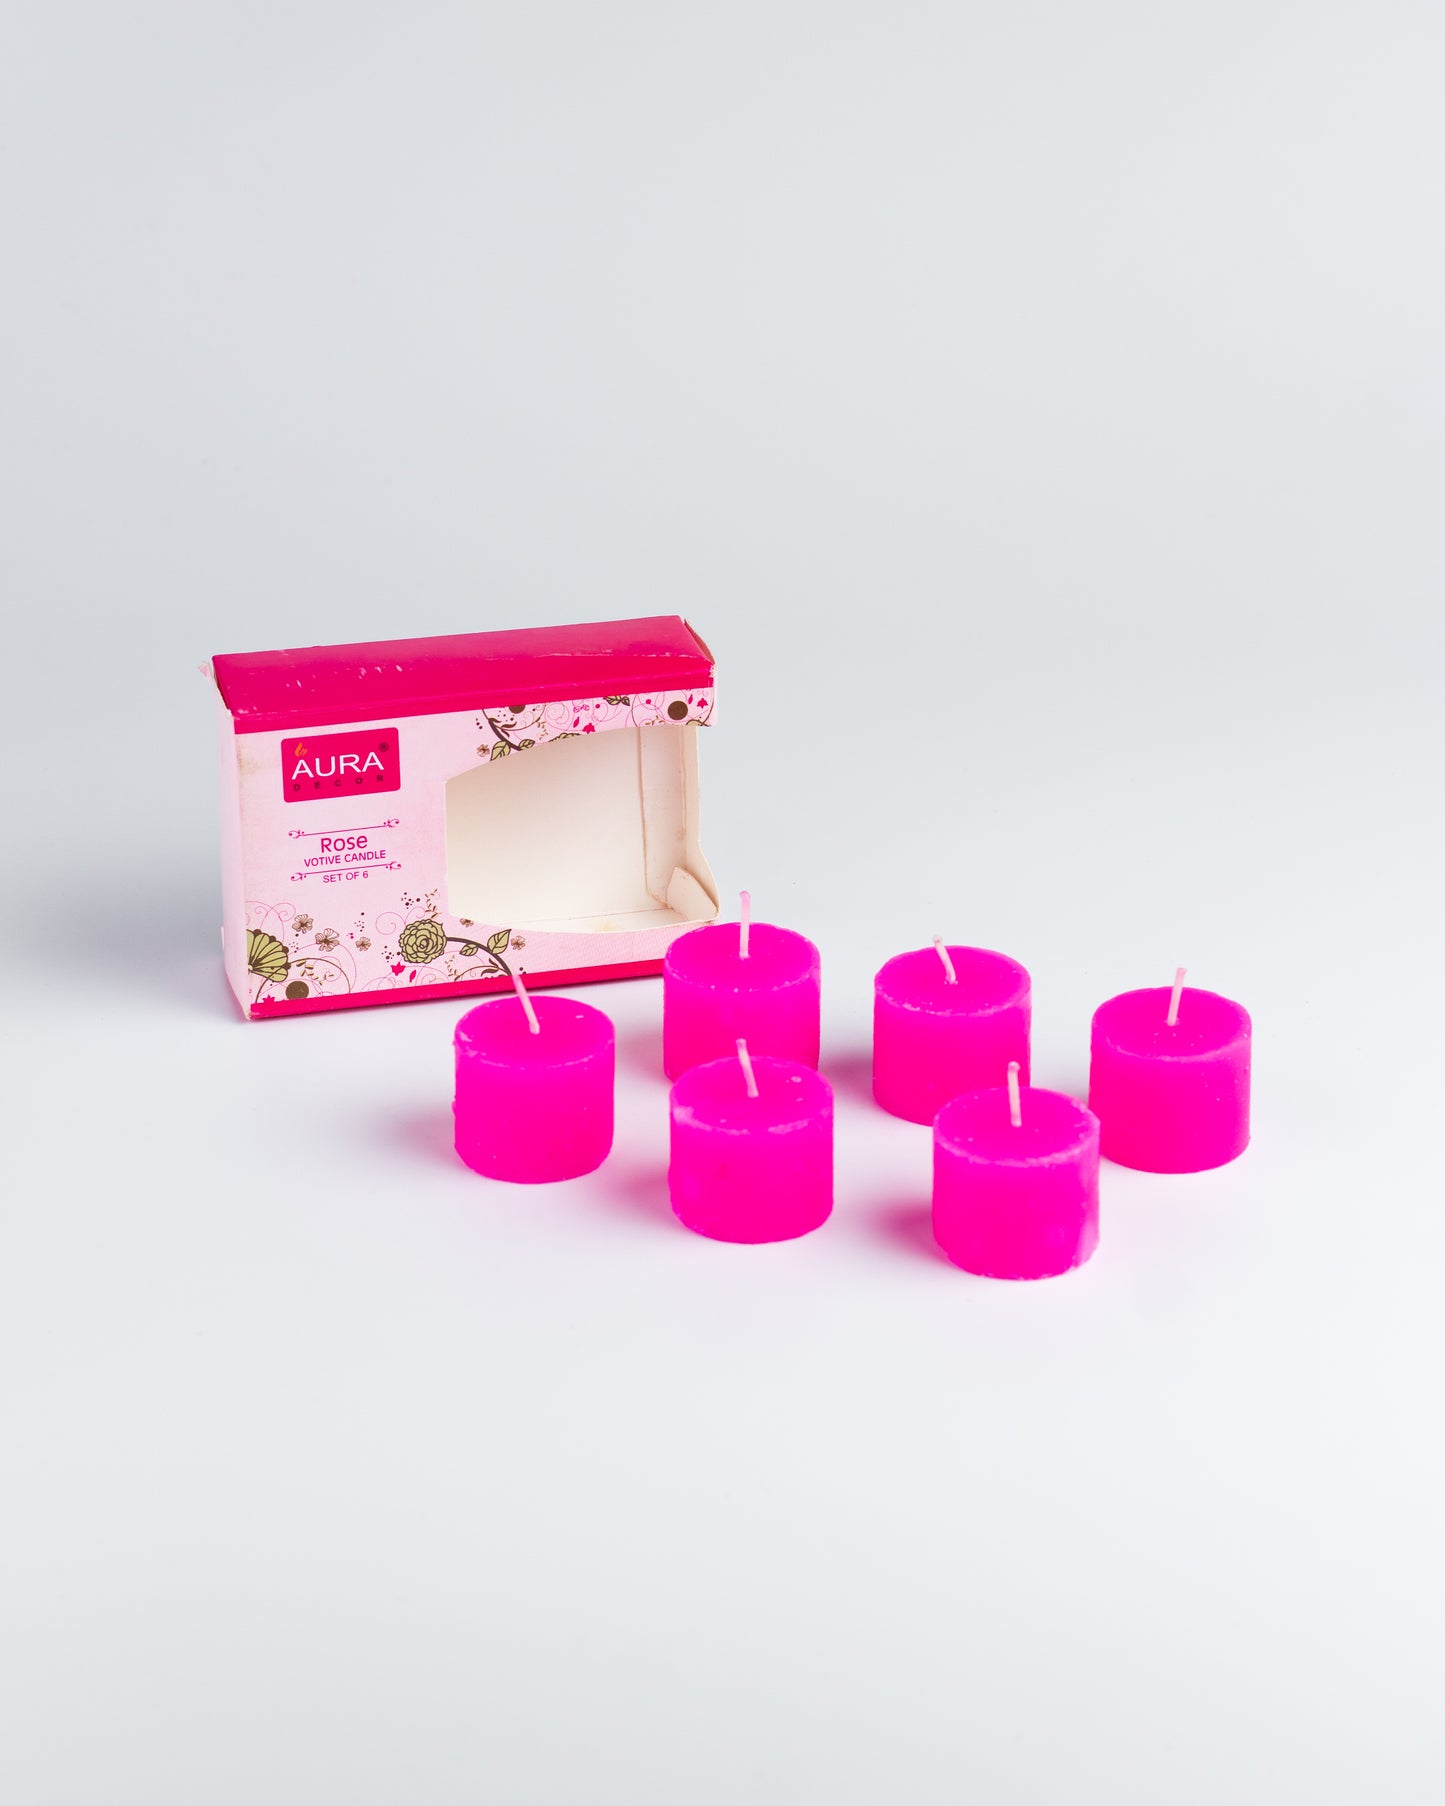 AuraDecor Set of 6 Rose Fragrance Votive Candle